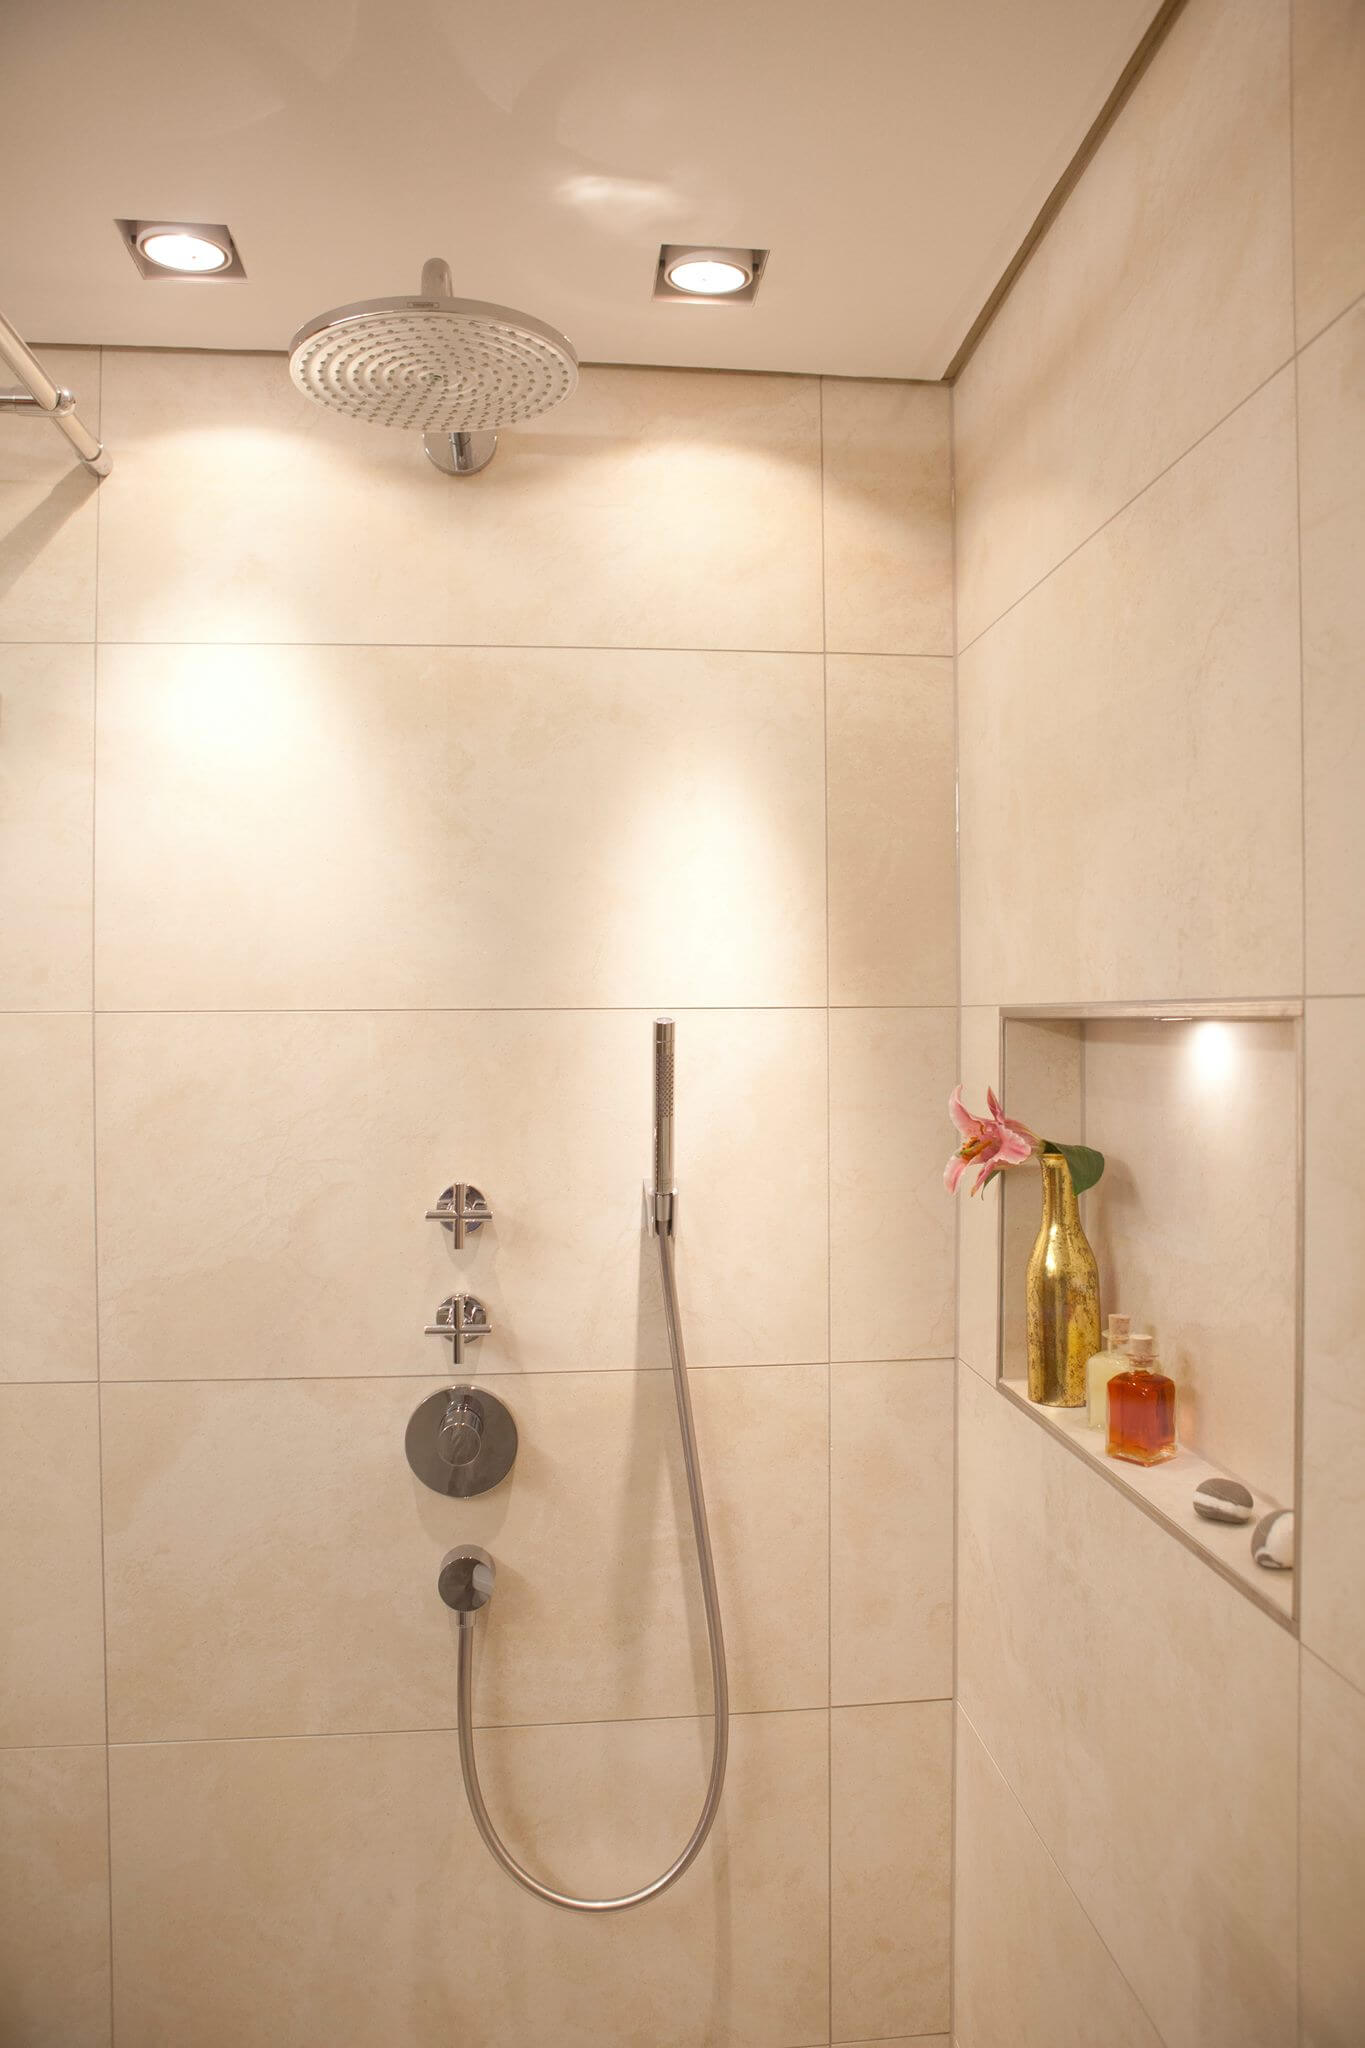 Gäste WC Design mit schmaler Dusche mit Vola Armatur